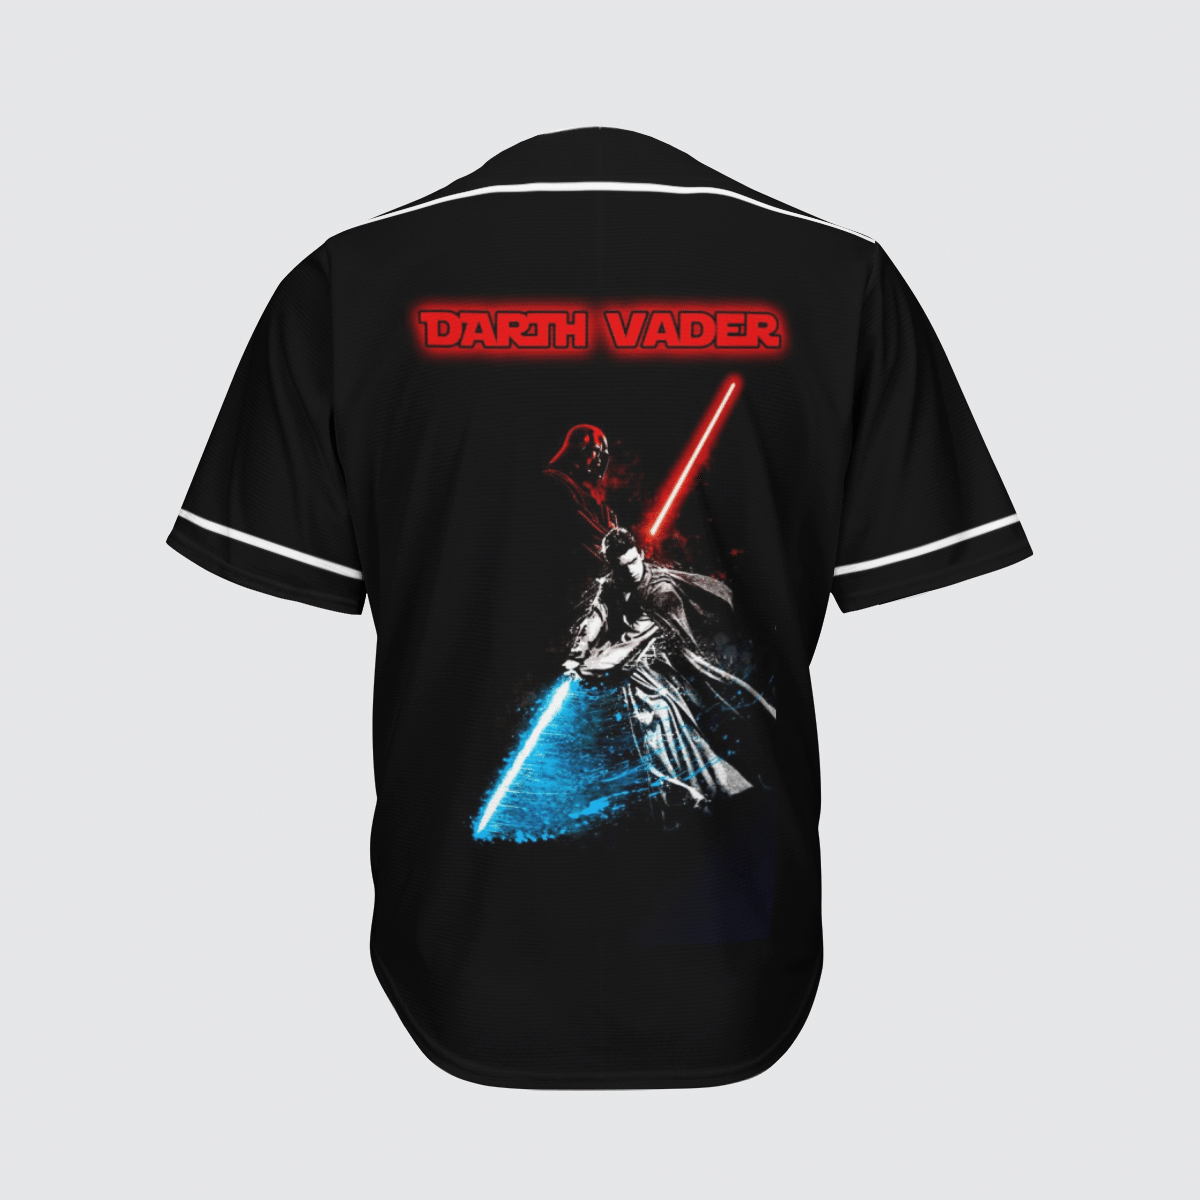 Skywalker Darth Vader baseball shirt 3